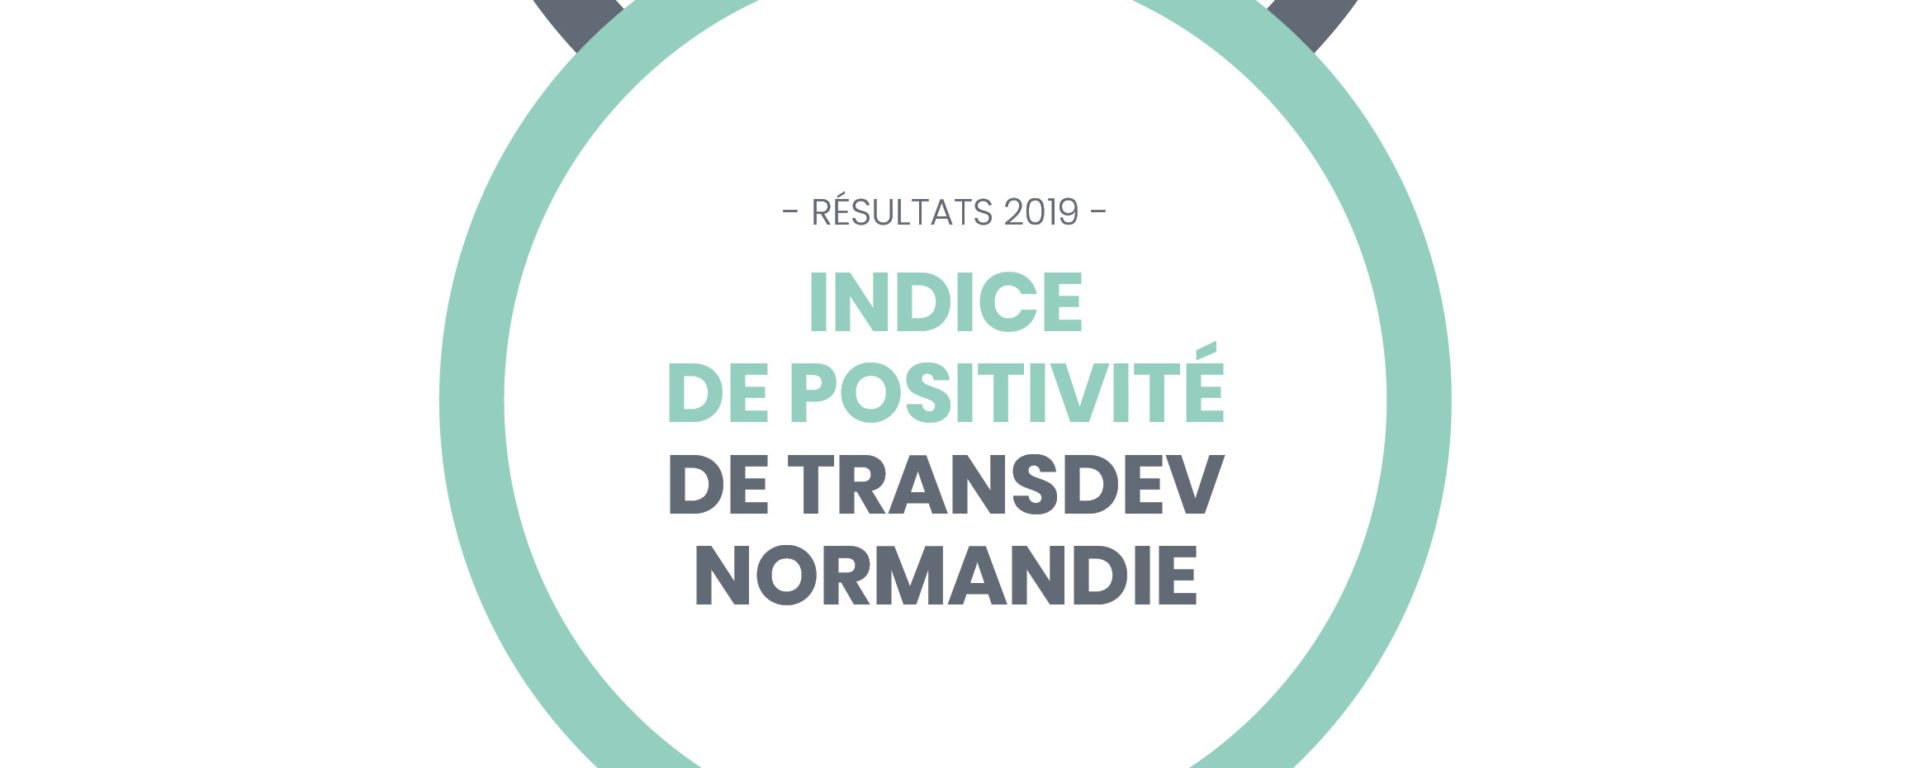 L'indice de positivité de Transdev Normandie